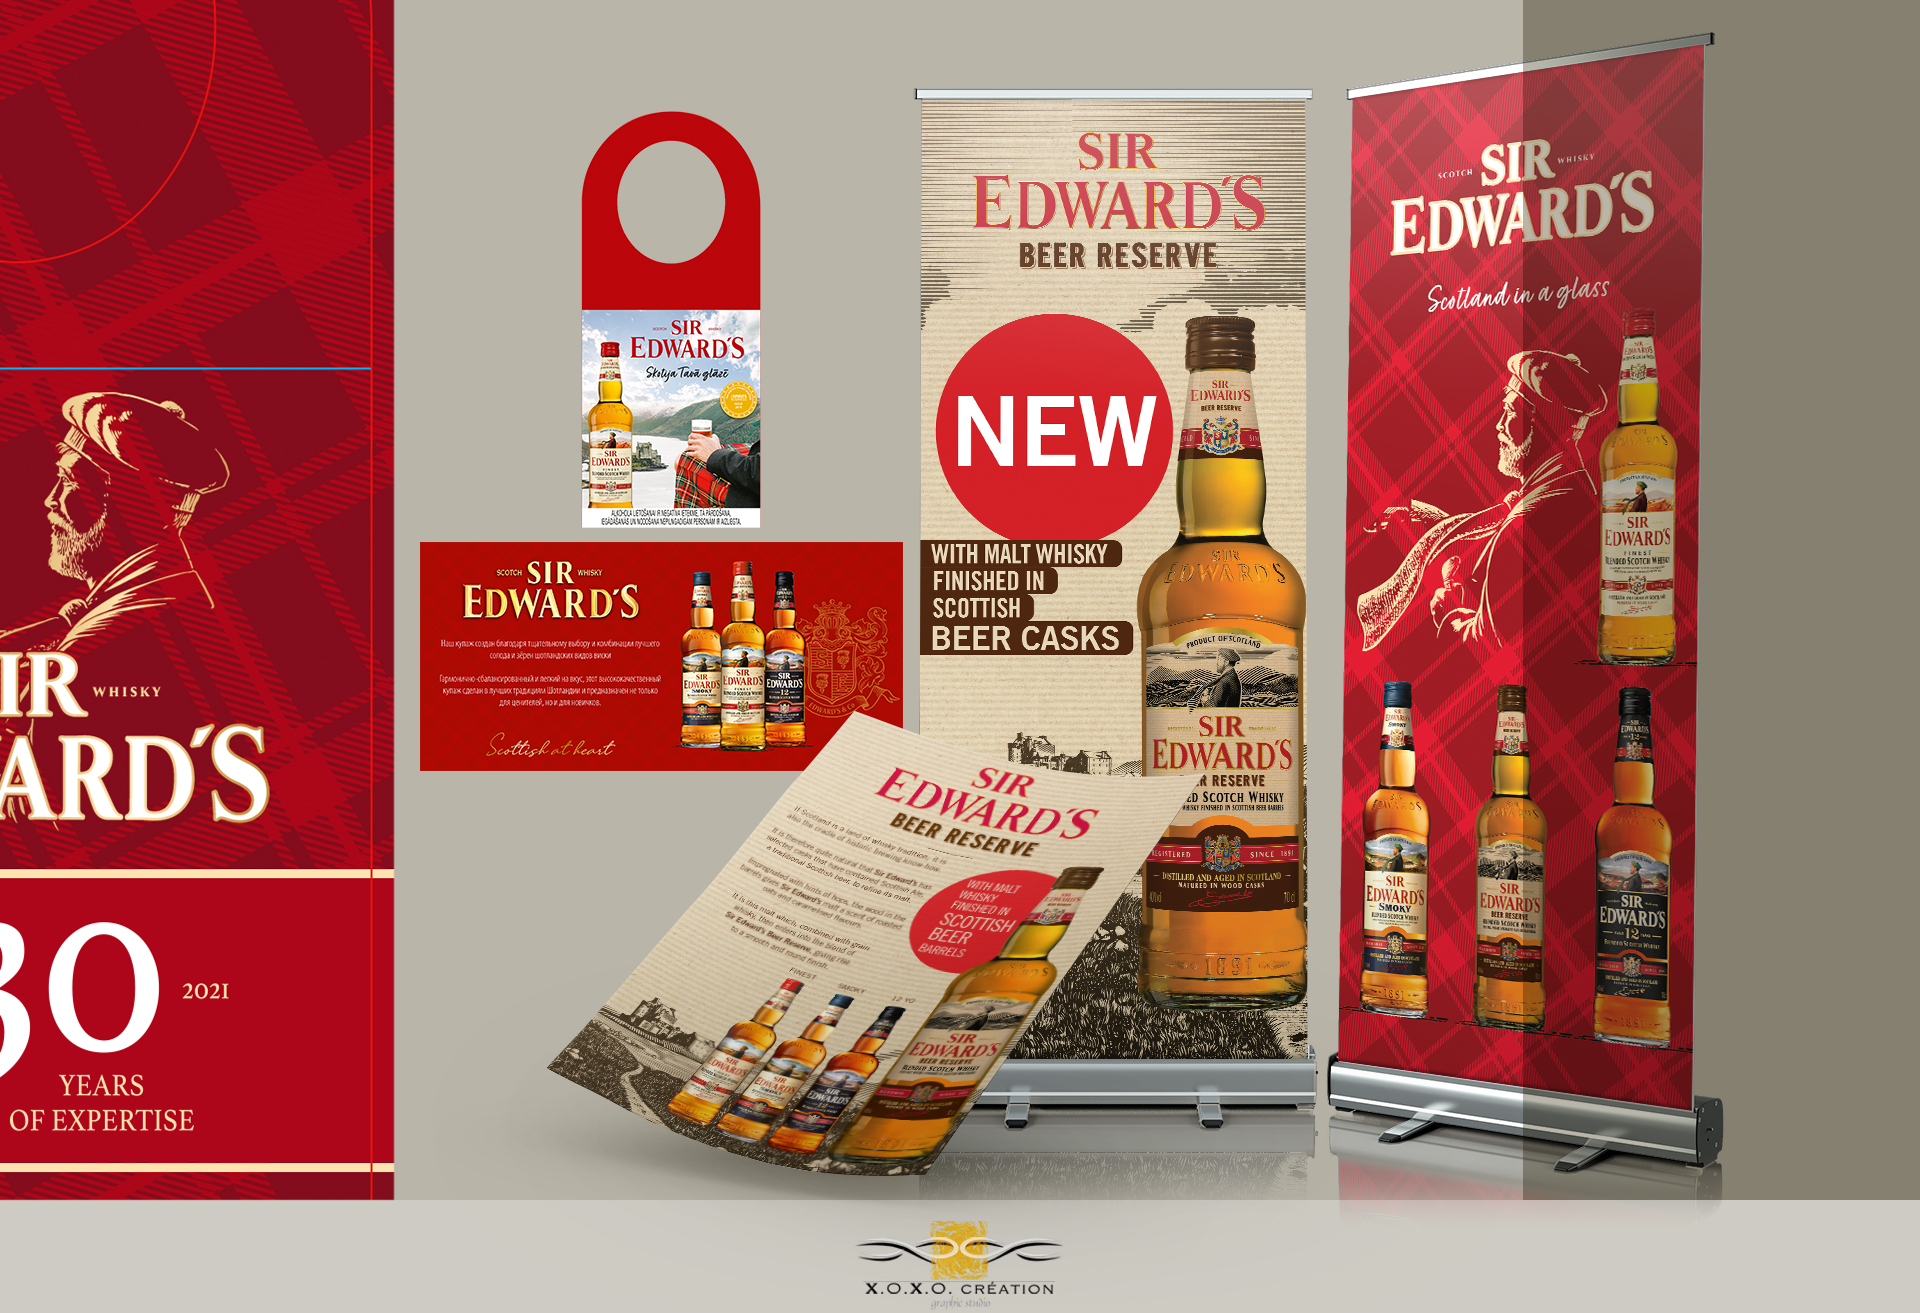 Mise en forme des outils de promotion des vente pour la marque Sir Edwards